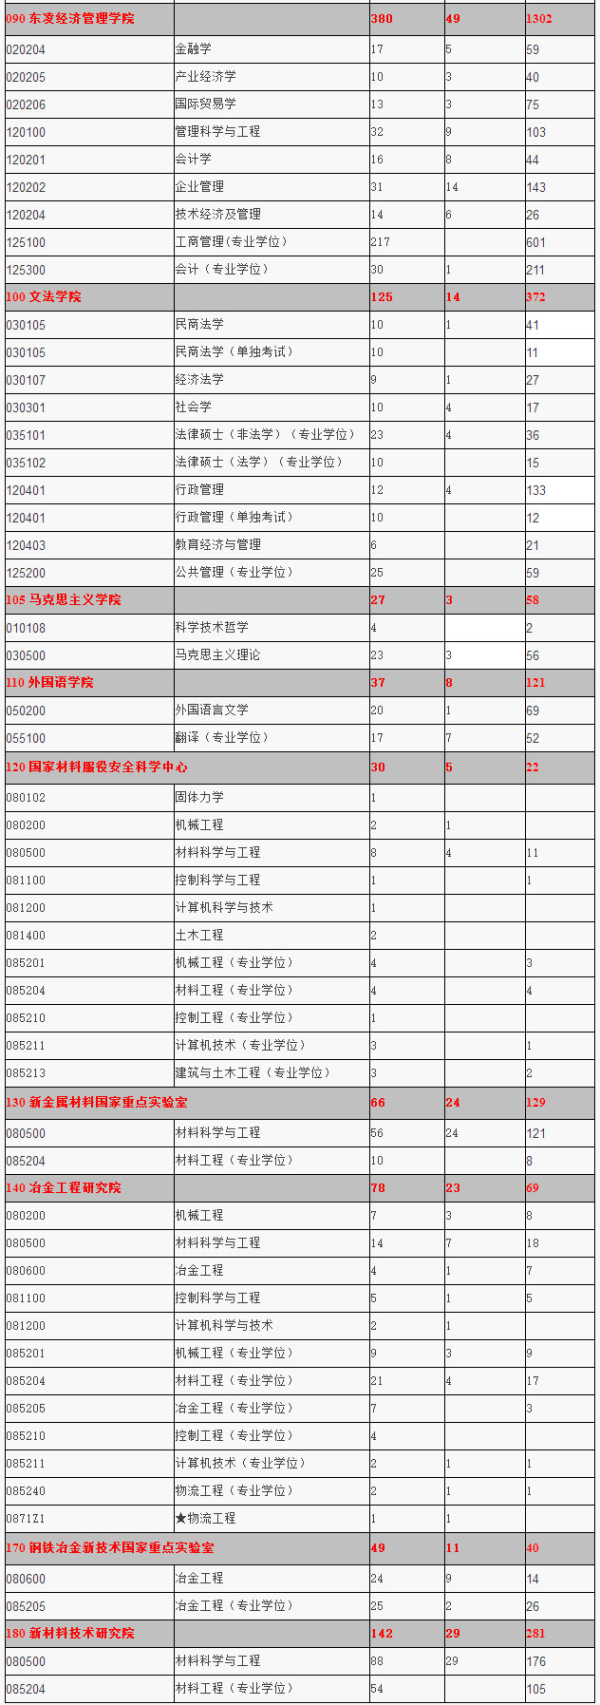 北京科技大学2015年硕士研究生招生考试报名情况统计2